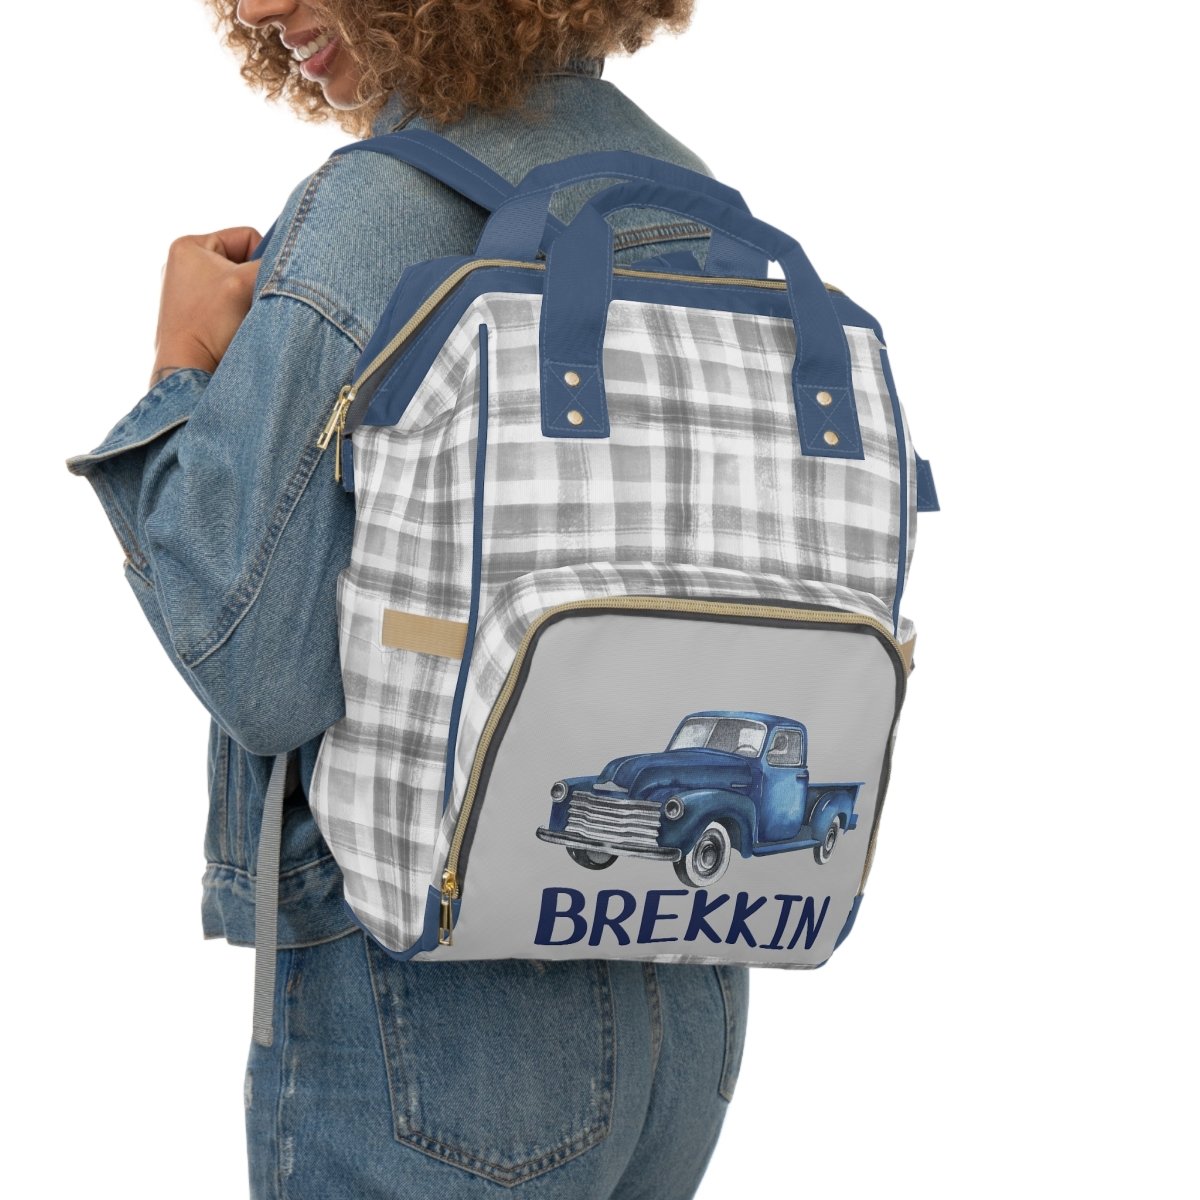 Vintage Truck Personalized Backpack Diaper Bag - gender_boy, text, Vintage Truck